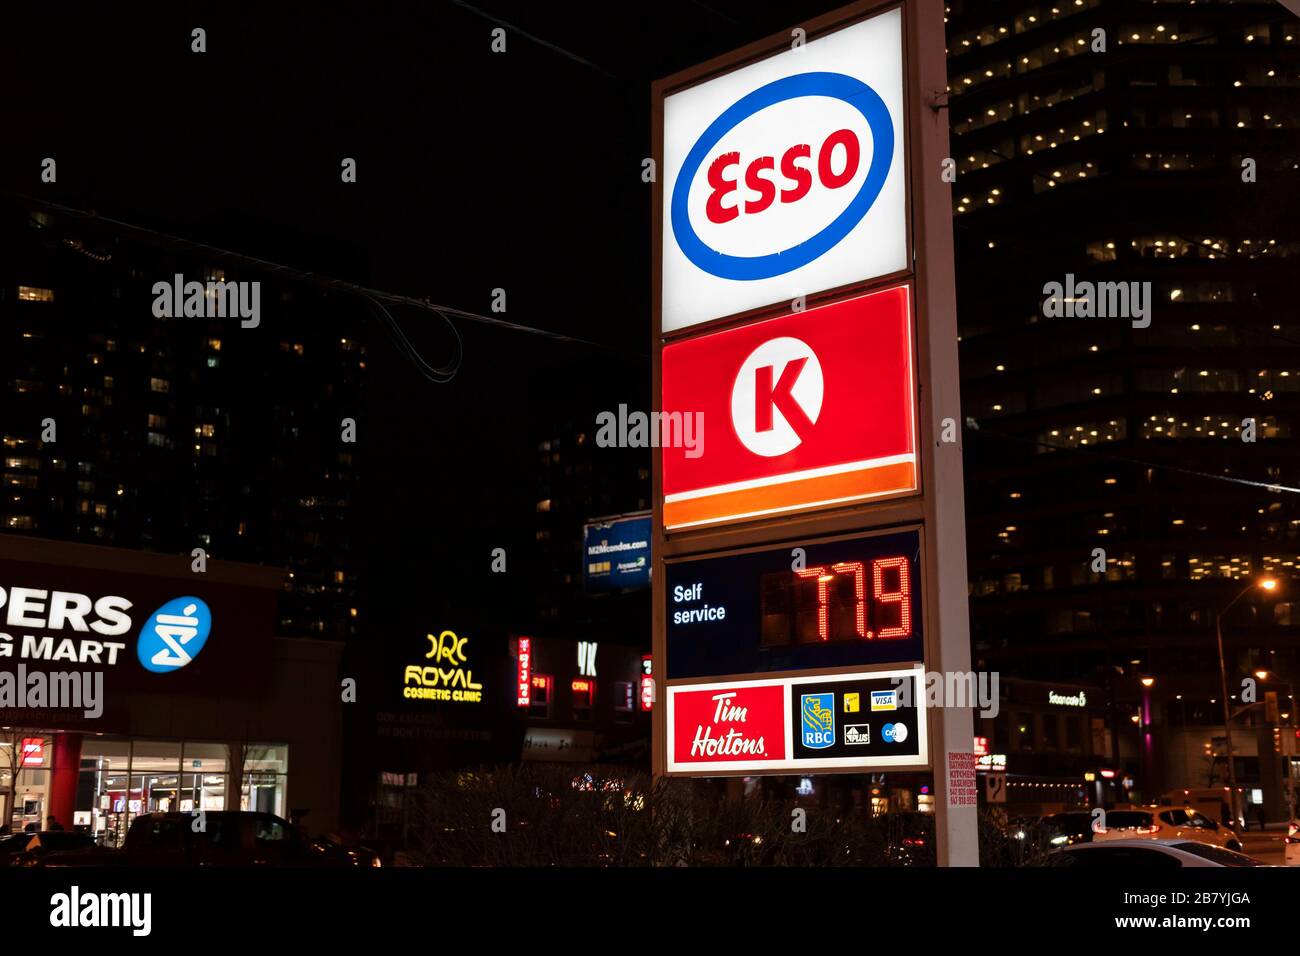 Toronto, Canada. 18 mars 2020. Le prix du gaz est de 77,9 cents le litre dans une station-service Esso située dans la banlieue nord de Toronto. Le prix du gaz a baissé en raison de l'éclosion de COVID-19. Dominic Chan/EXImages Banque D'Images